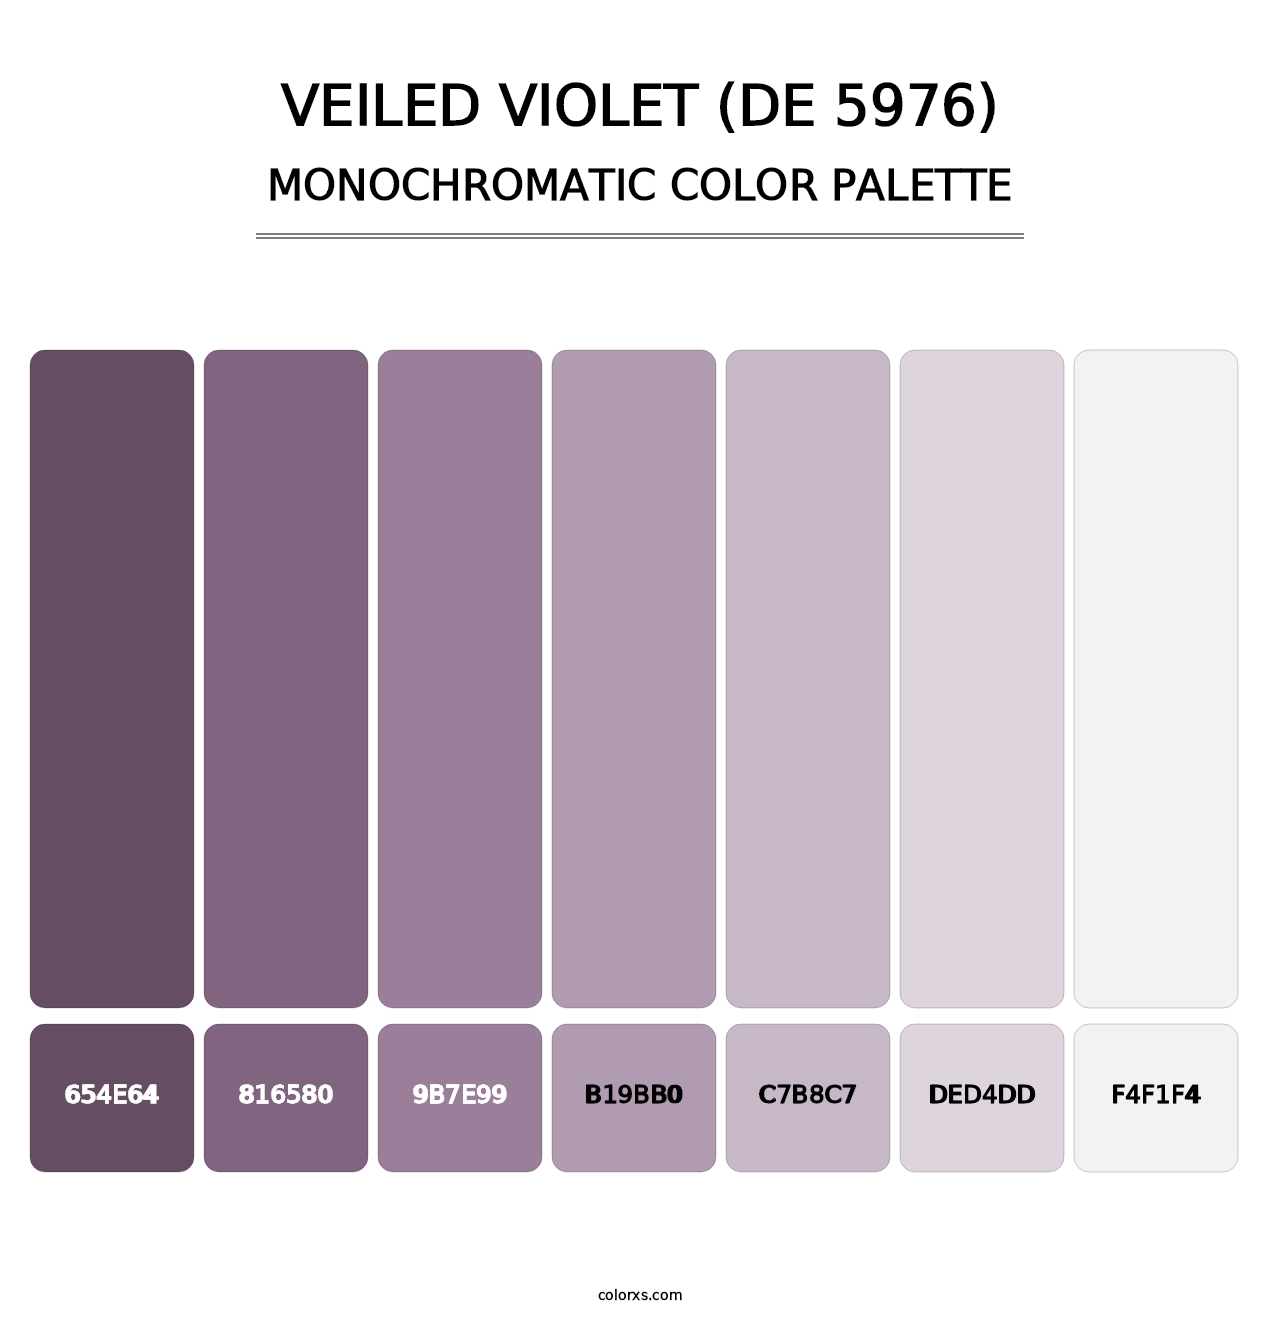 Veiled Violet (DE 5976) - Monochromatic Color Palette